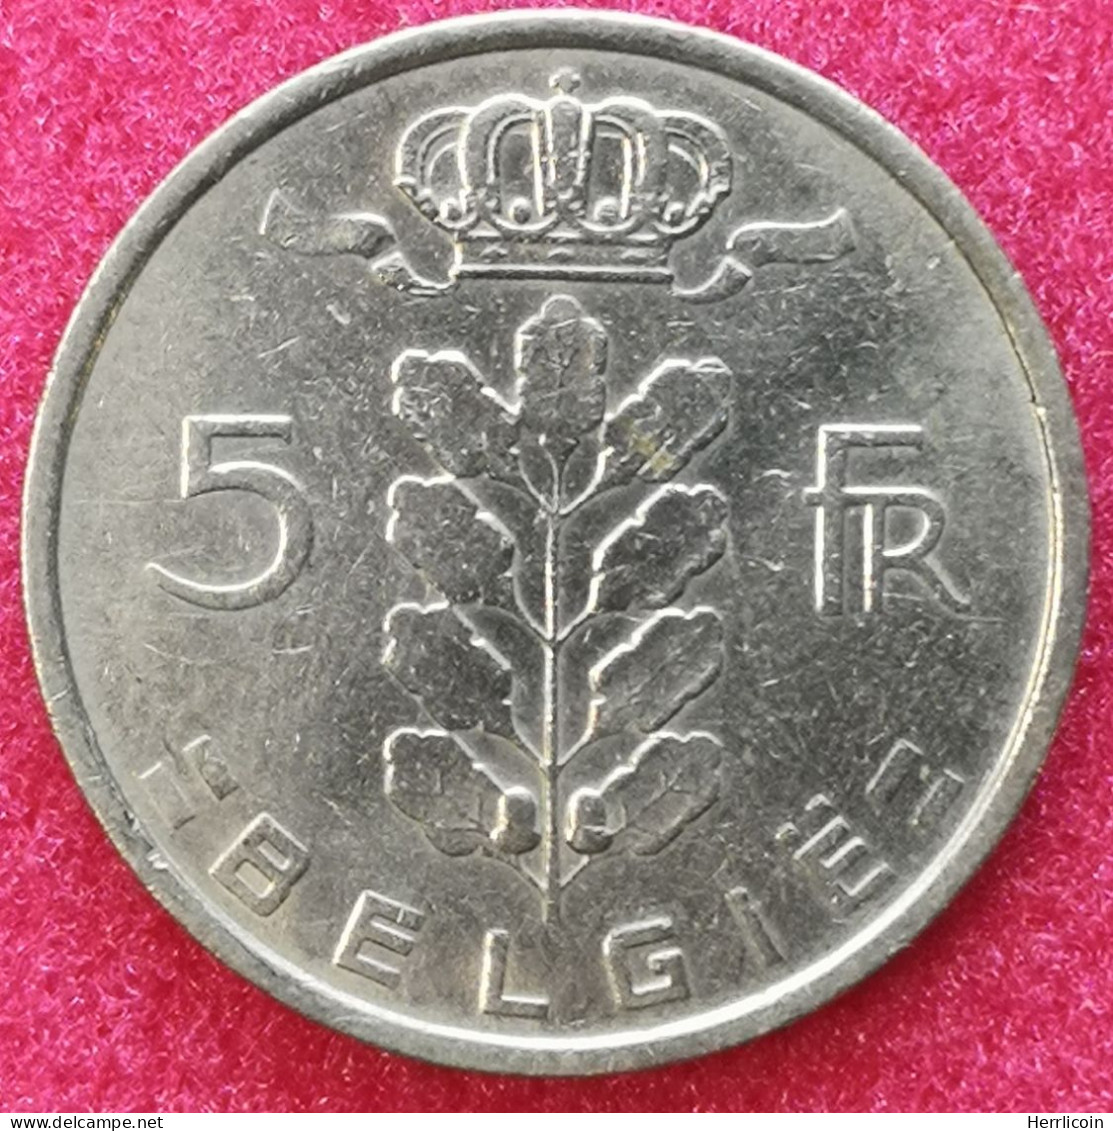 Monnaie Belgique - 1975 - 5 Francs - Type Cérès En Néerlandais - 5 Frank